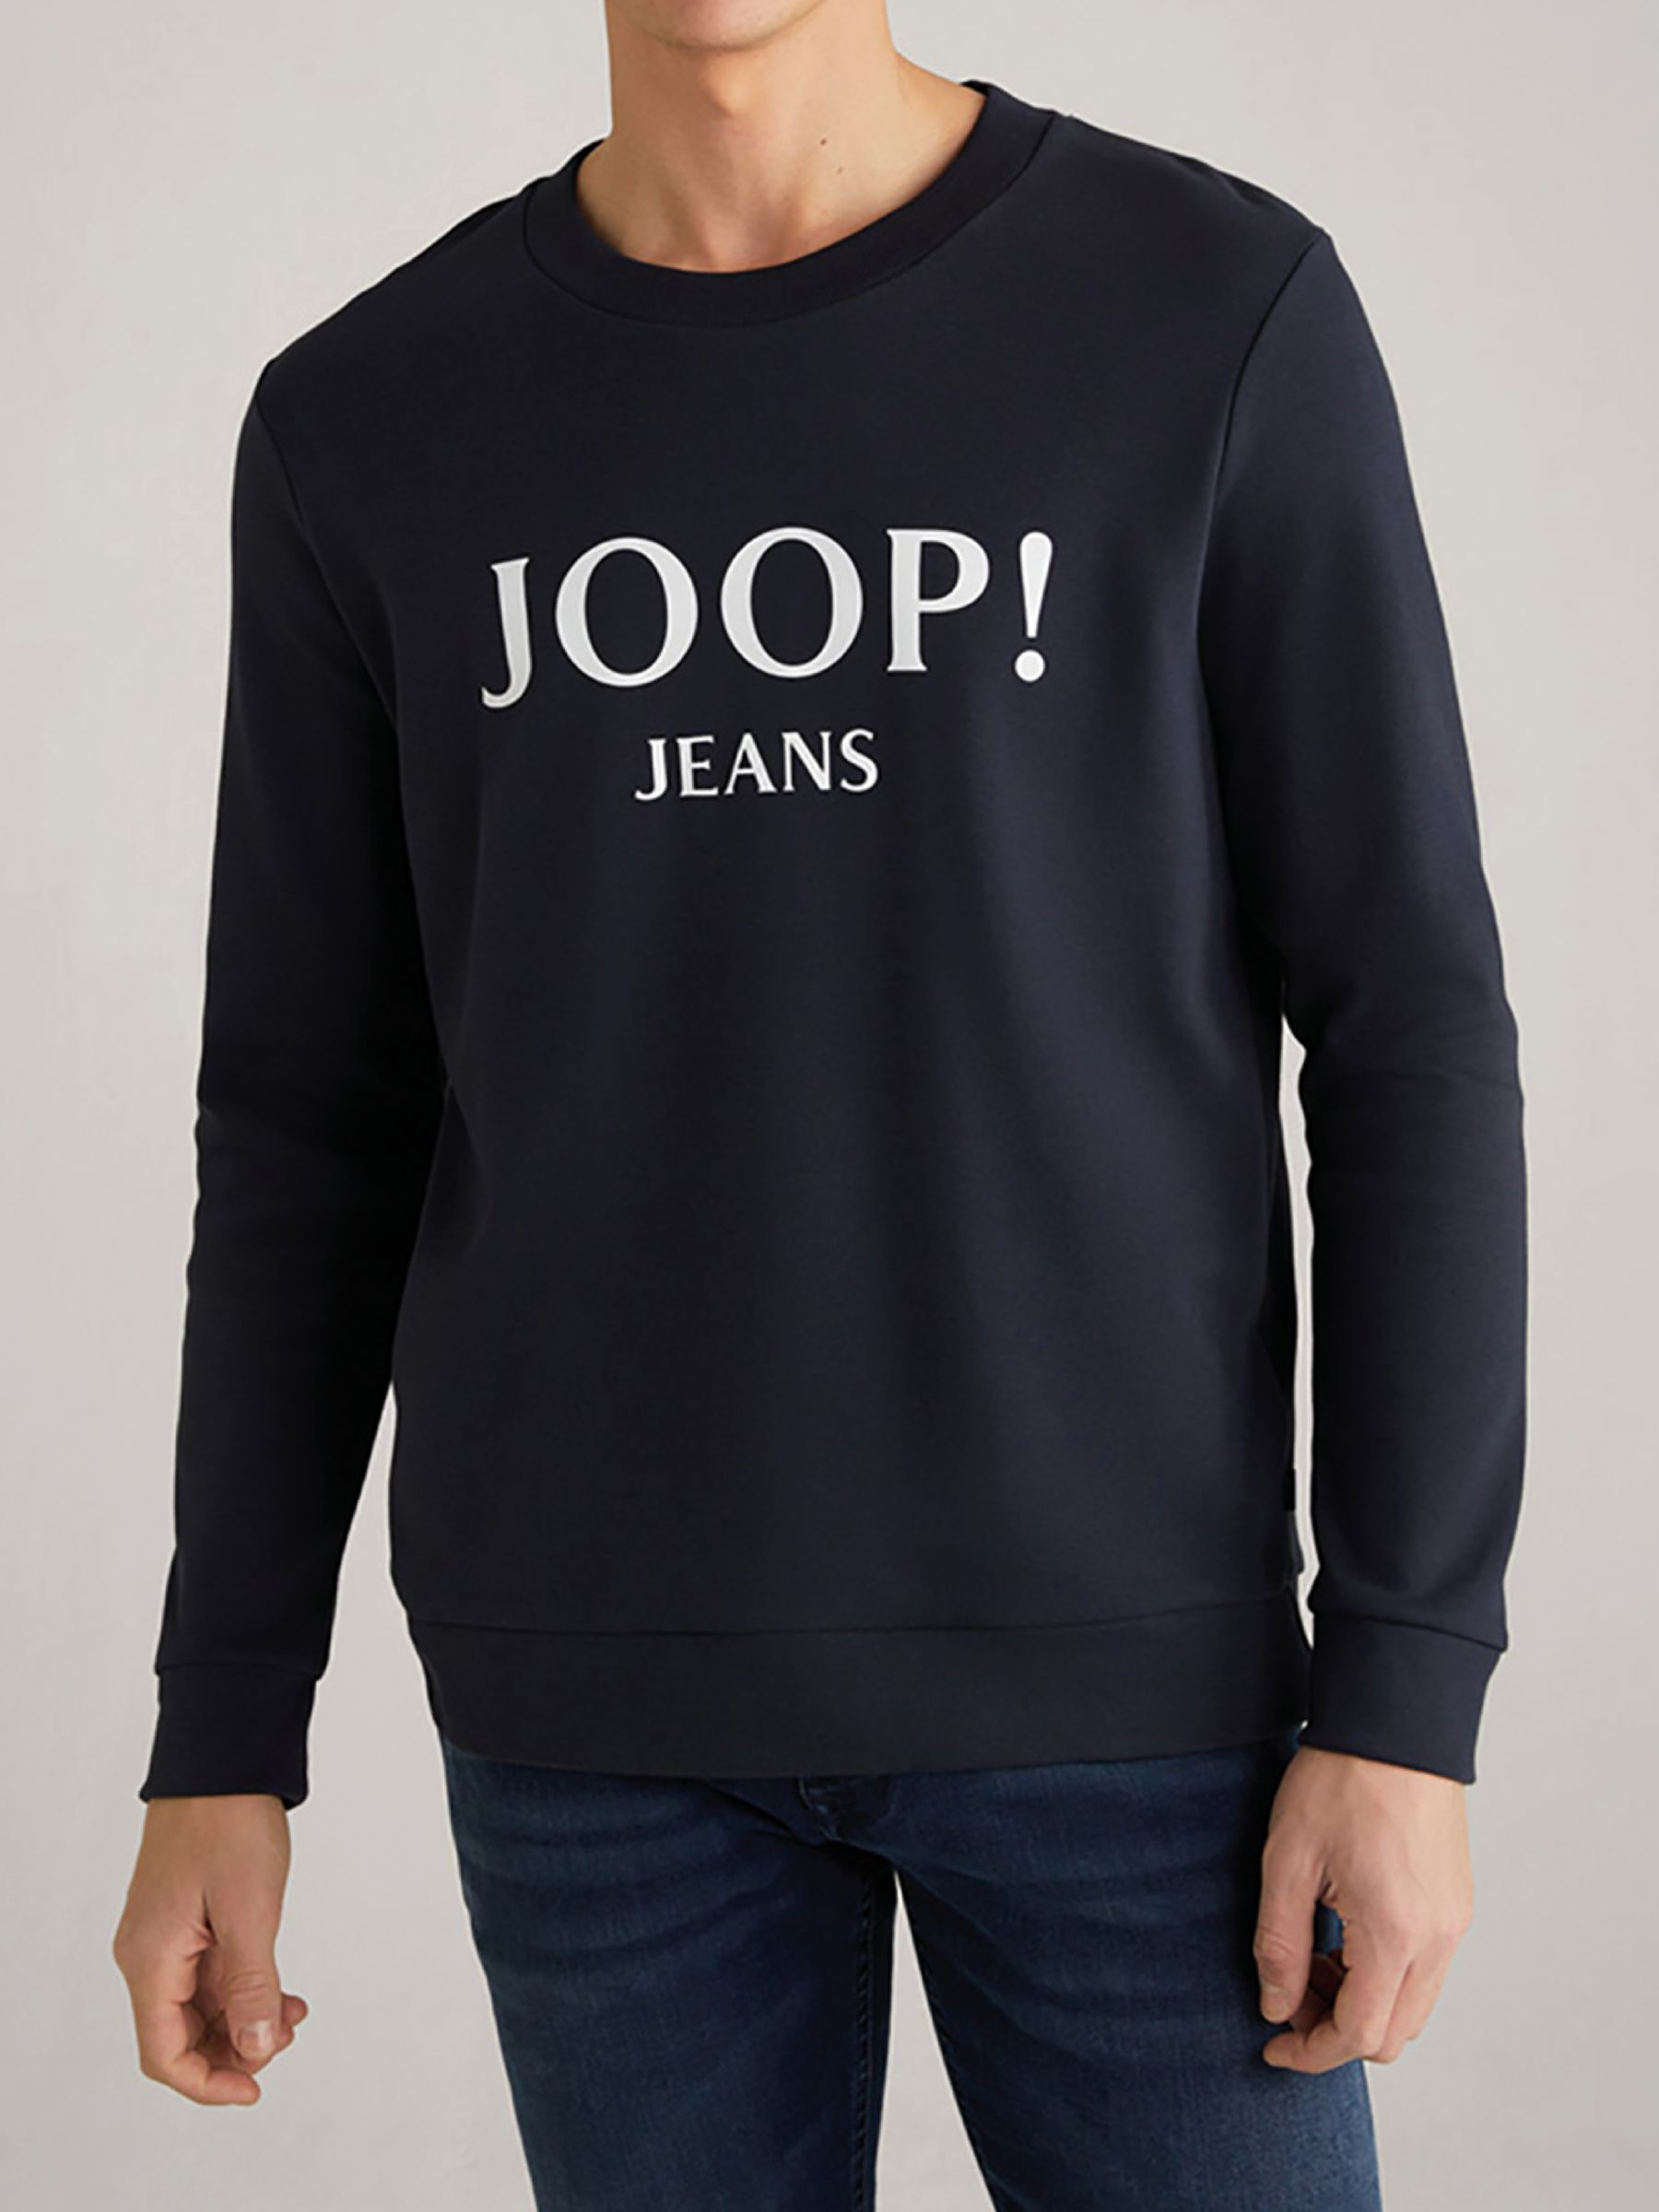 - Jeans Sweatshirt メンズ- JOOP blue dark